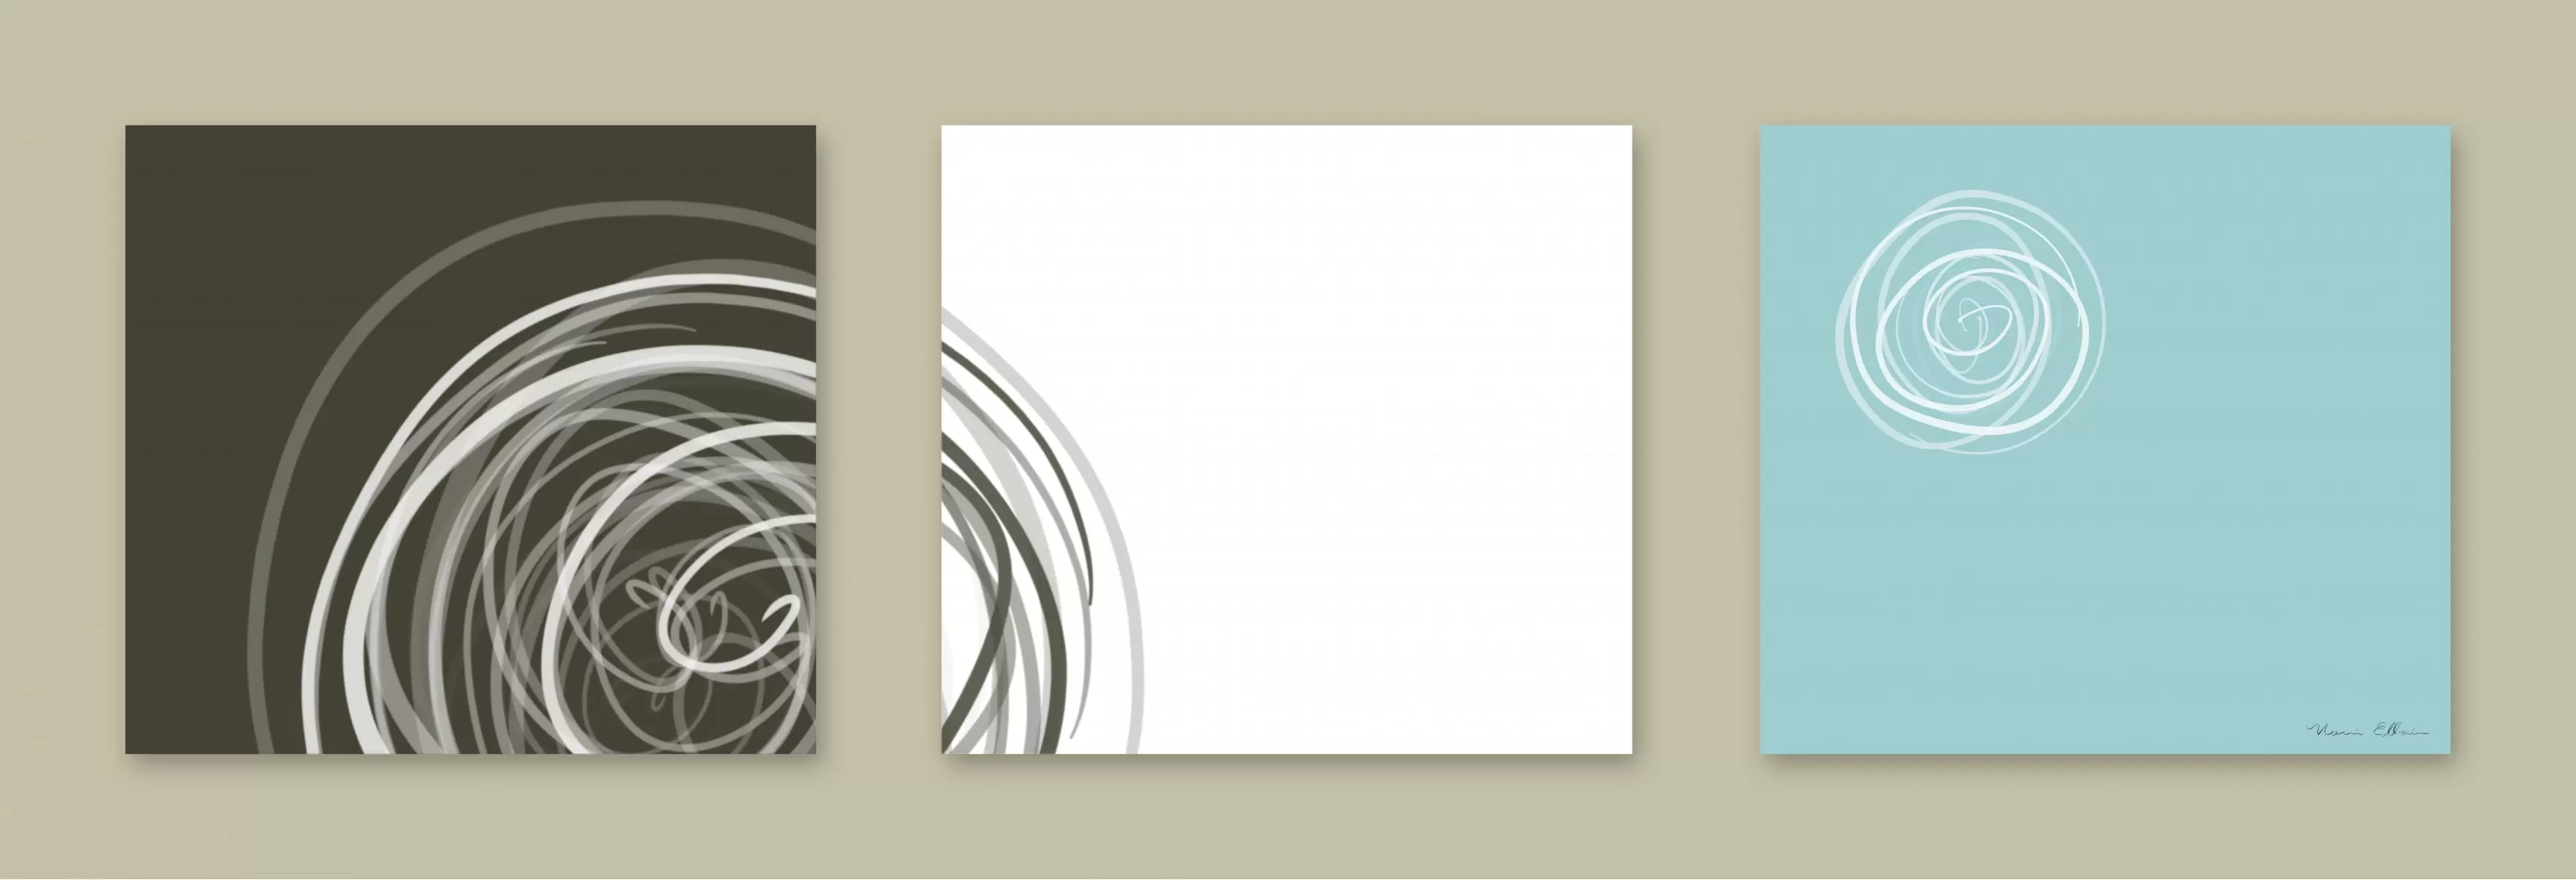 עיגולים 3 - נעמי עיצובים - תמונות לסלון רגוע ונעים אבסטרקט מודרני  - מק''ט: 163527